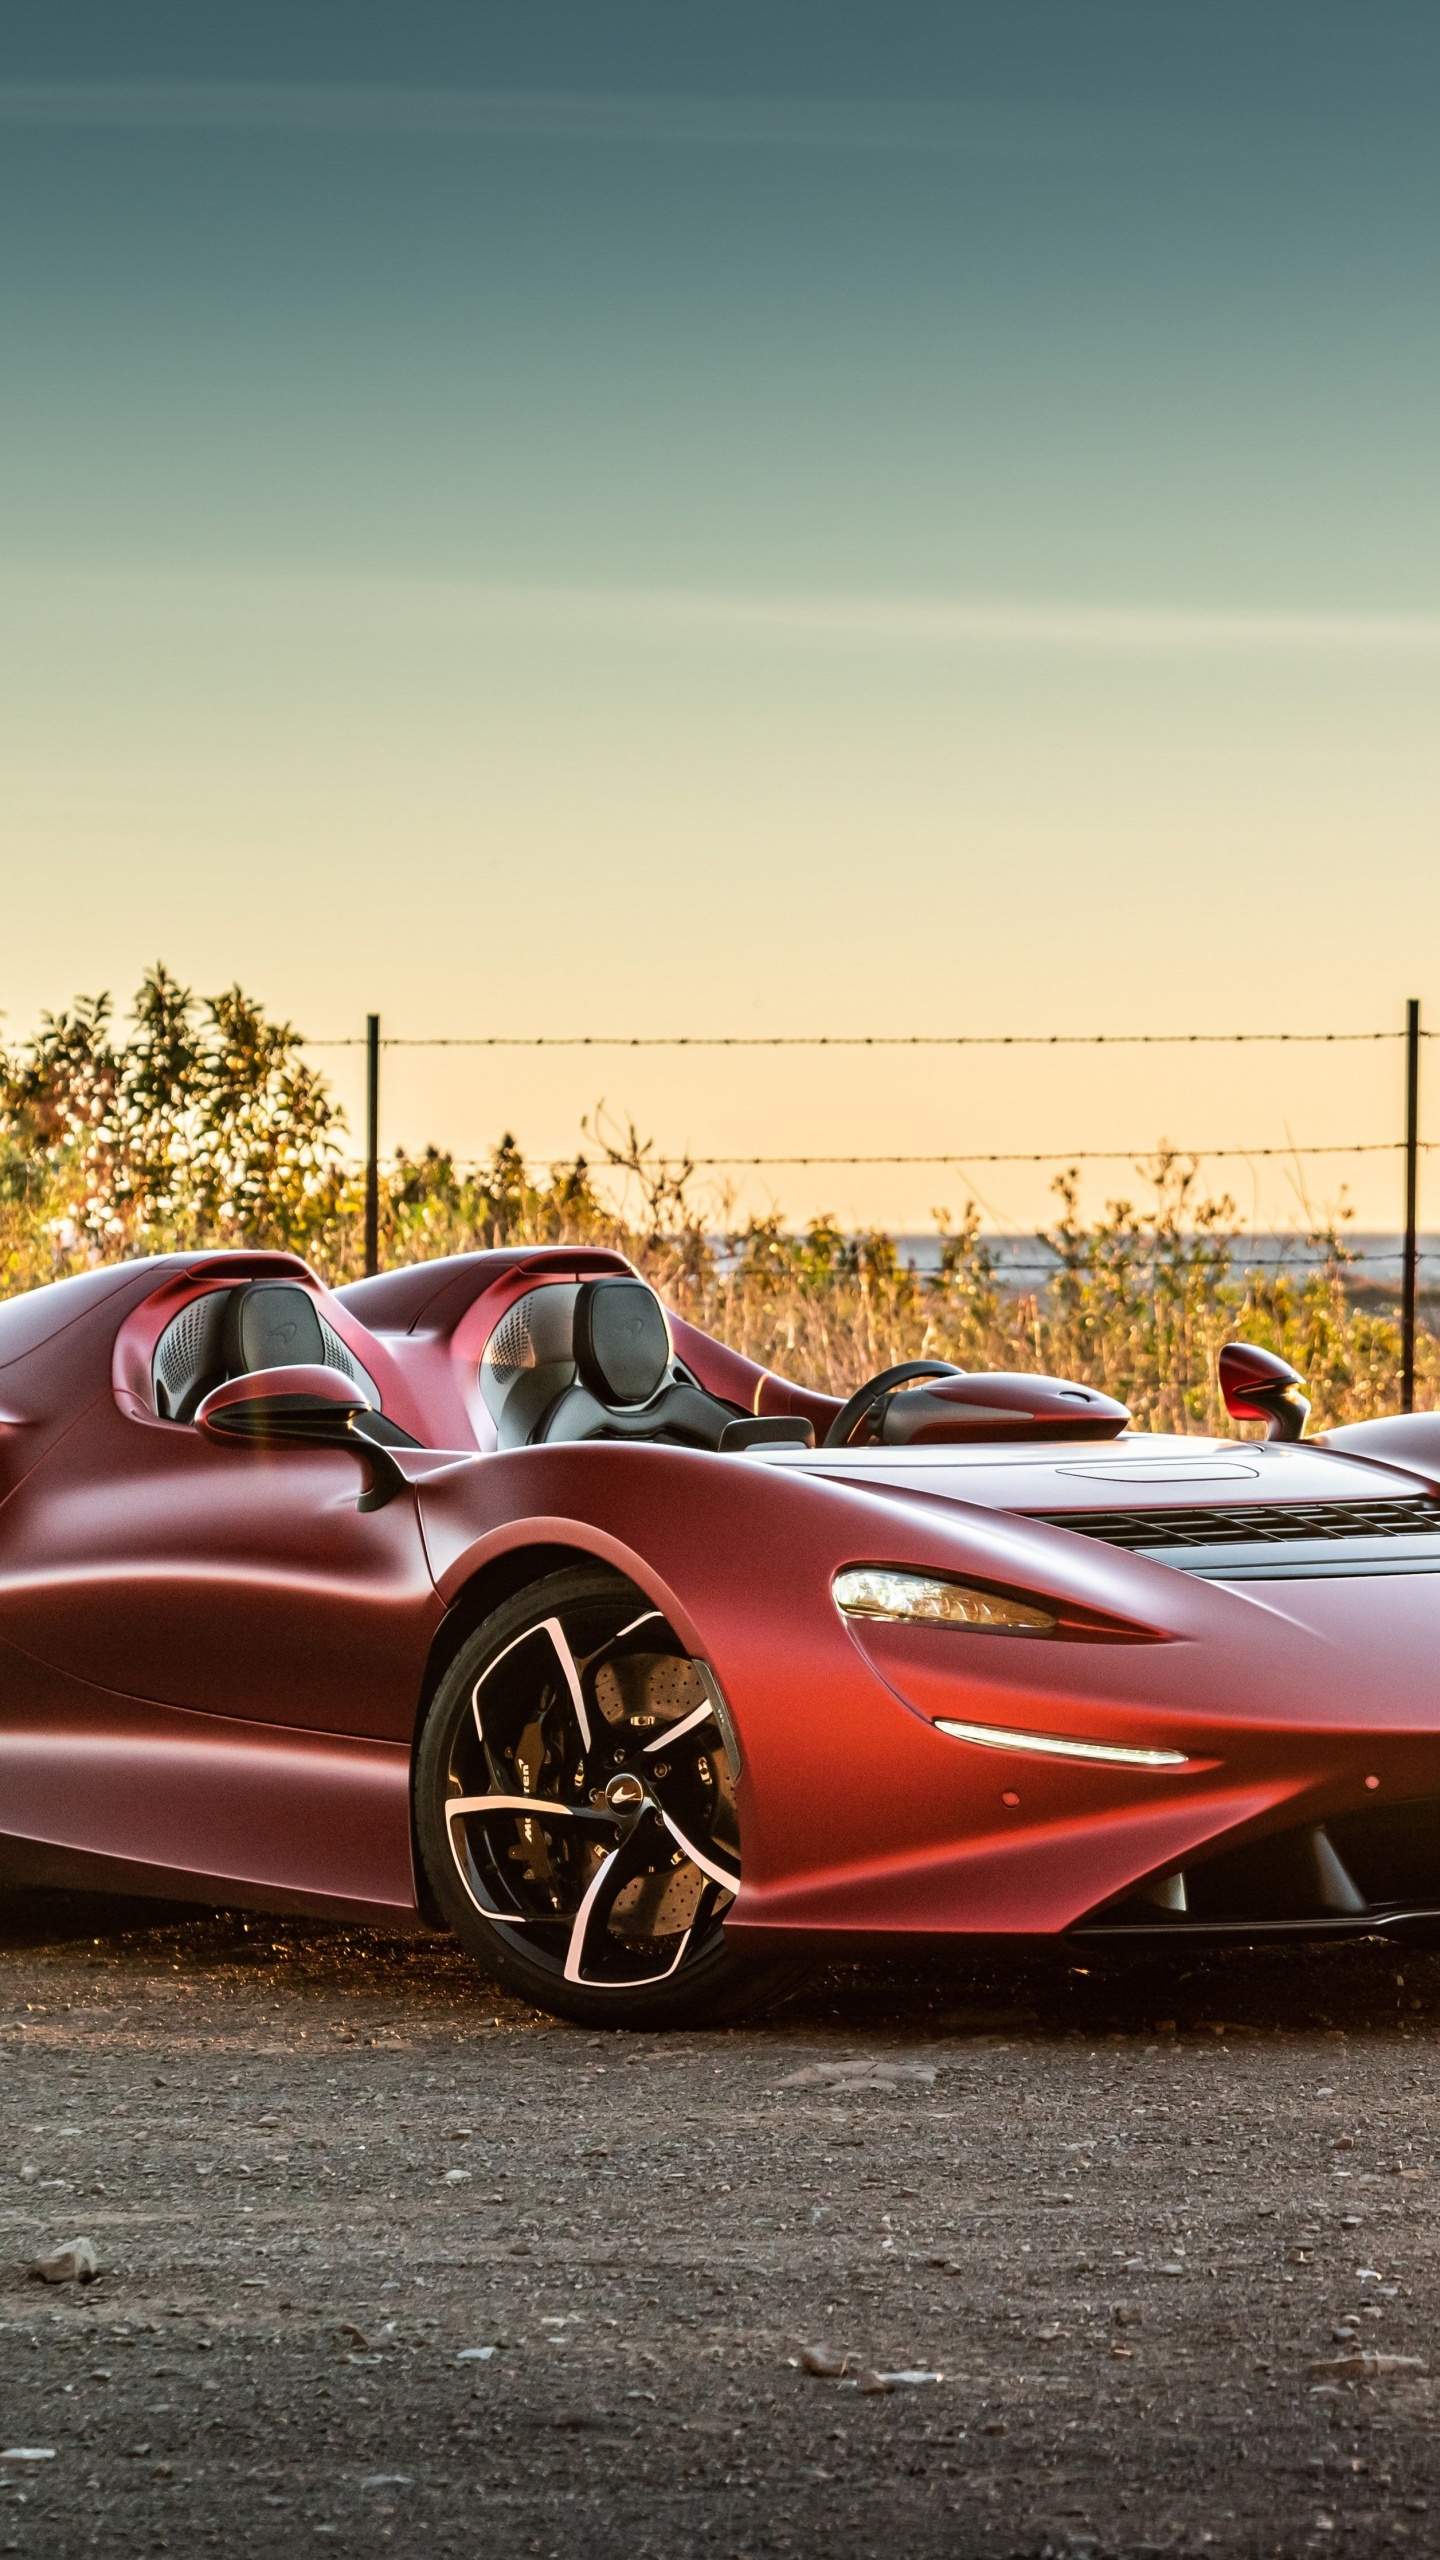 McLaren Elva, 2021 beauty, 4K resolution, Exquisite craftsmanship, 1440x2560 HD Phone